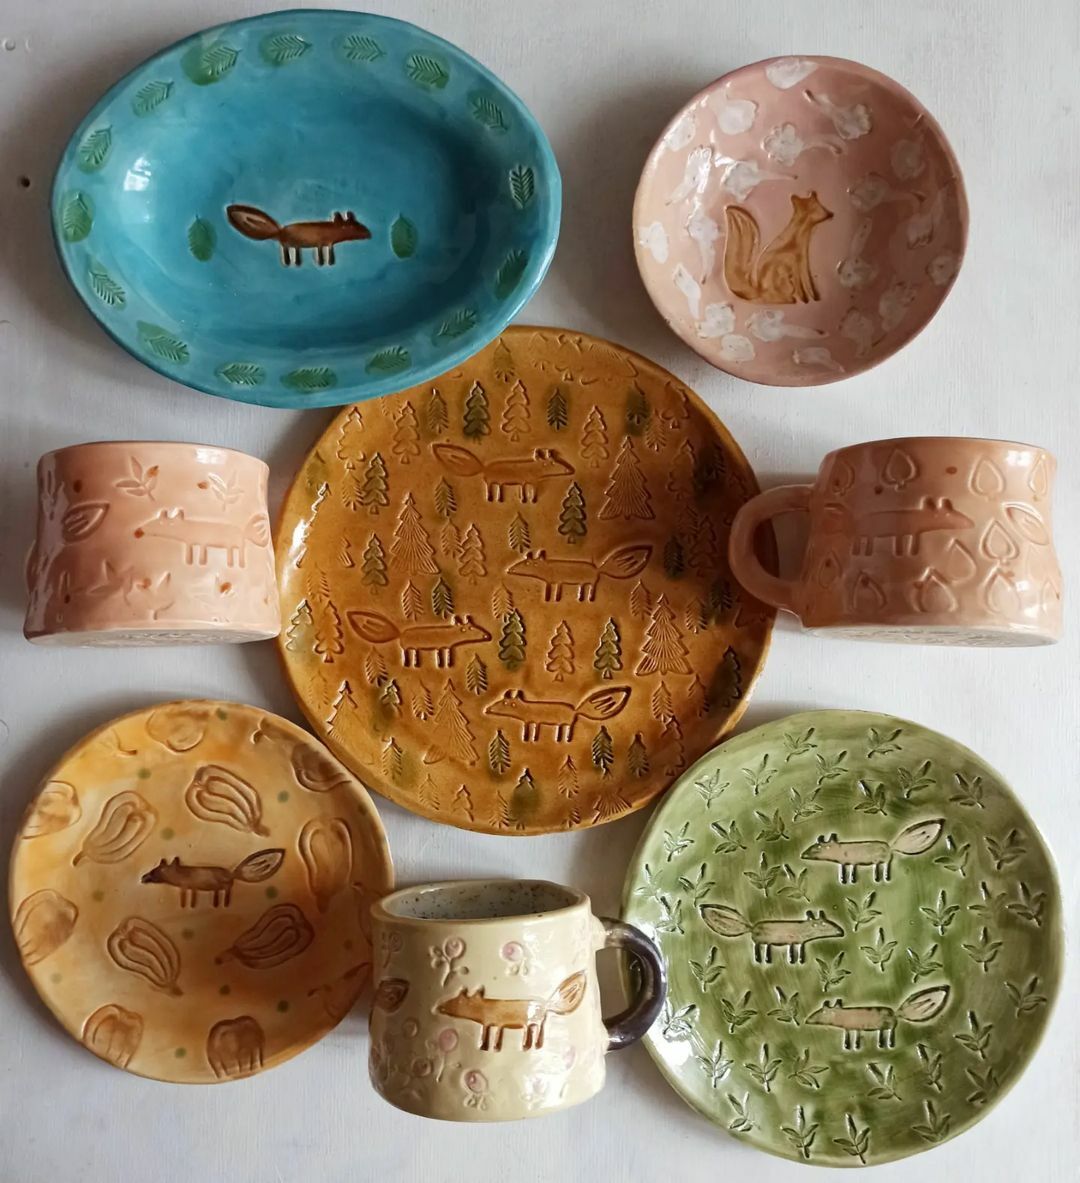 керамические тарелки и кружки разных цветов